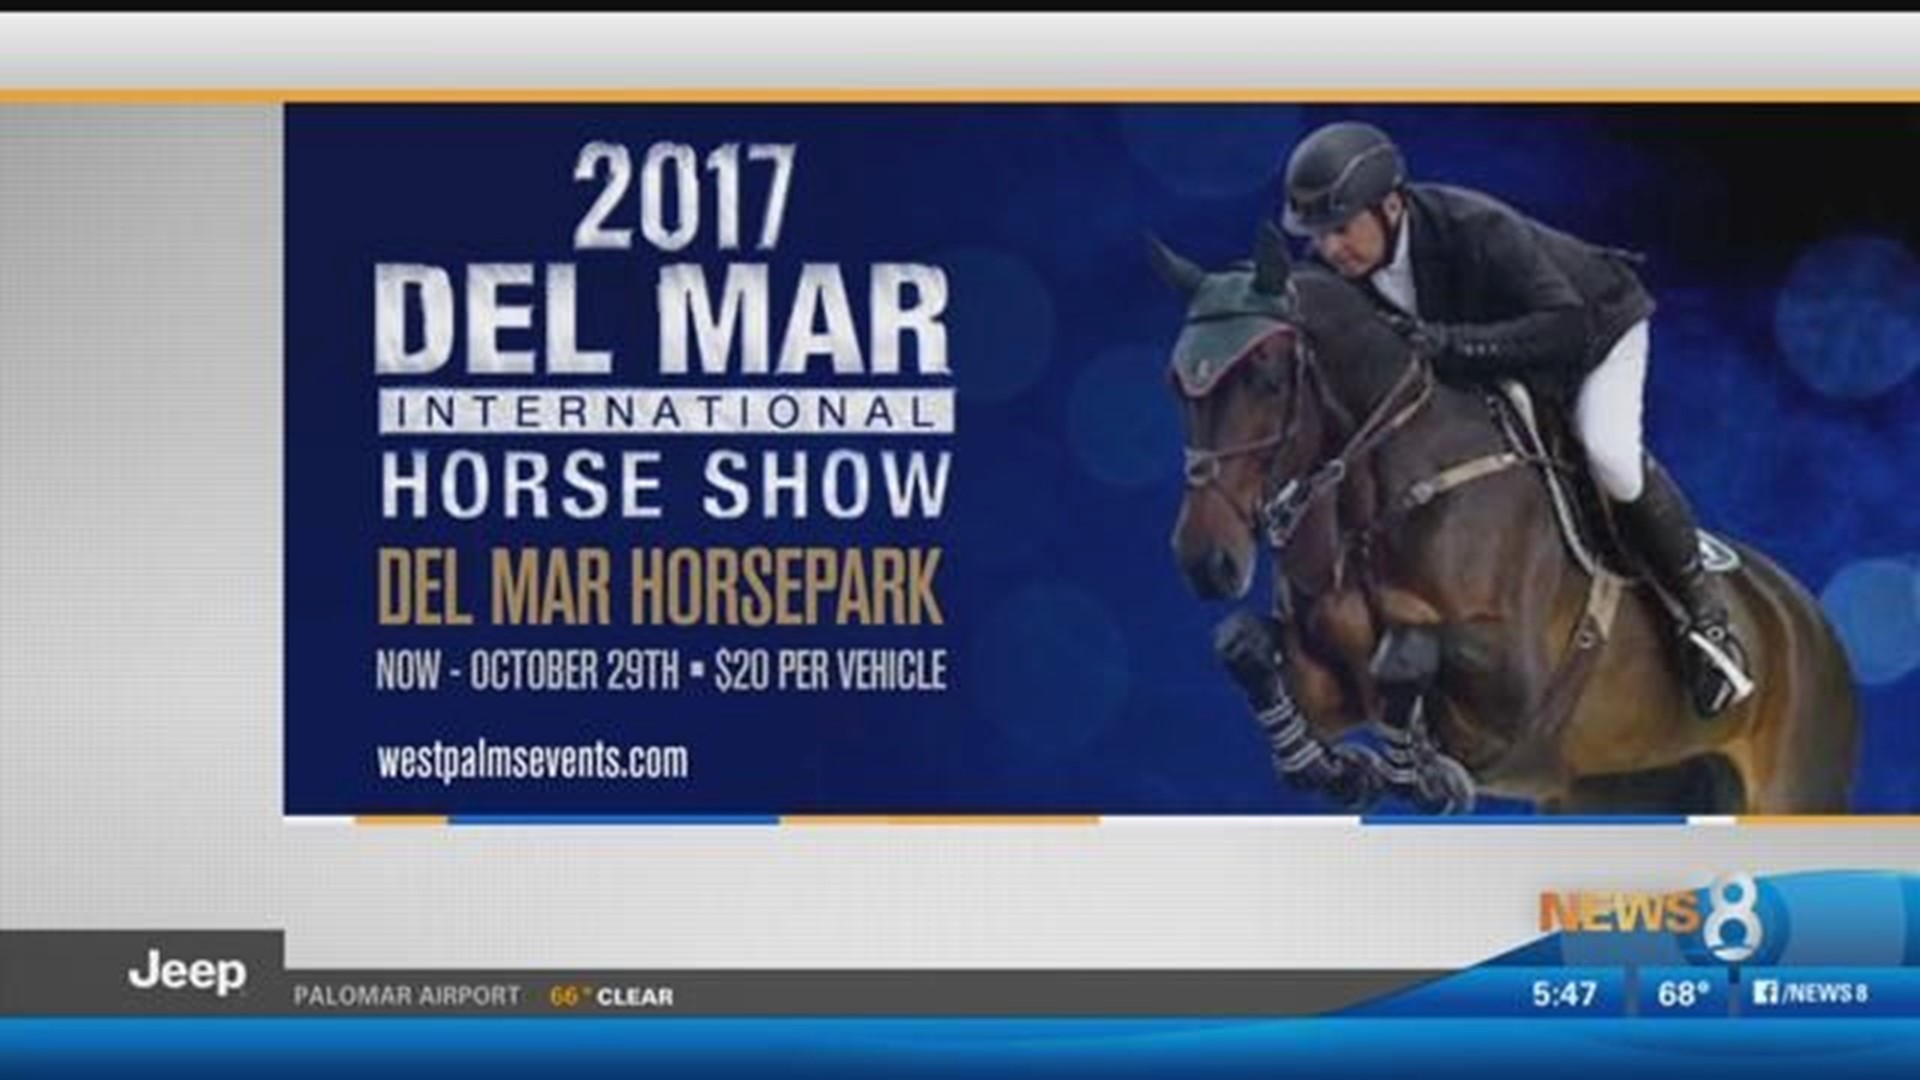 Del Mar International Horse Show returns